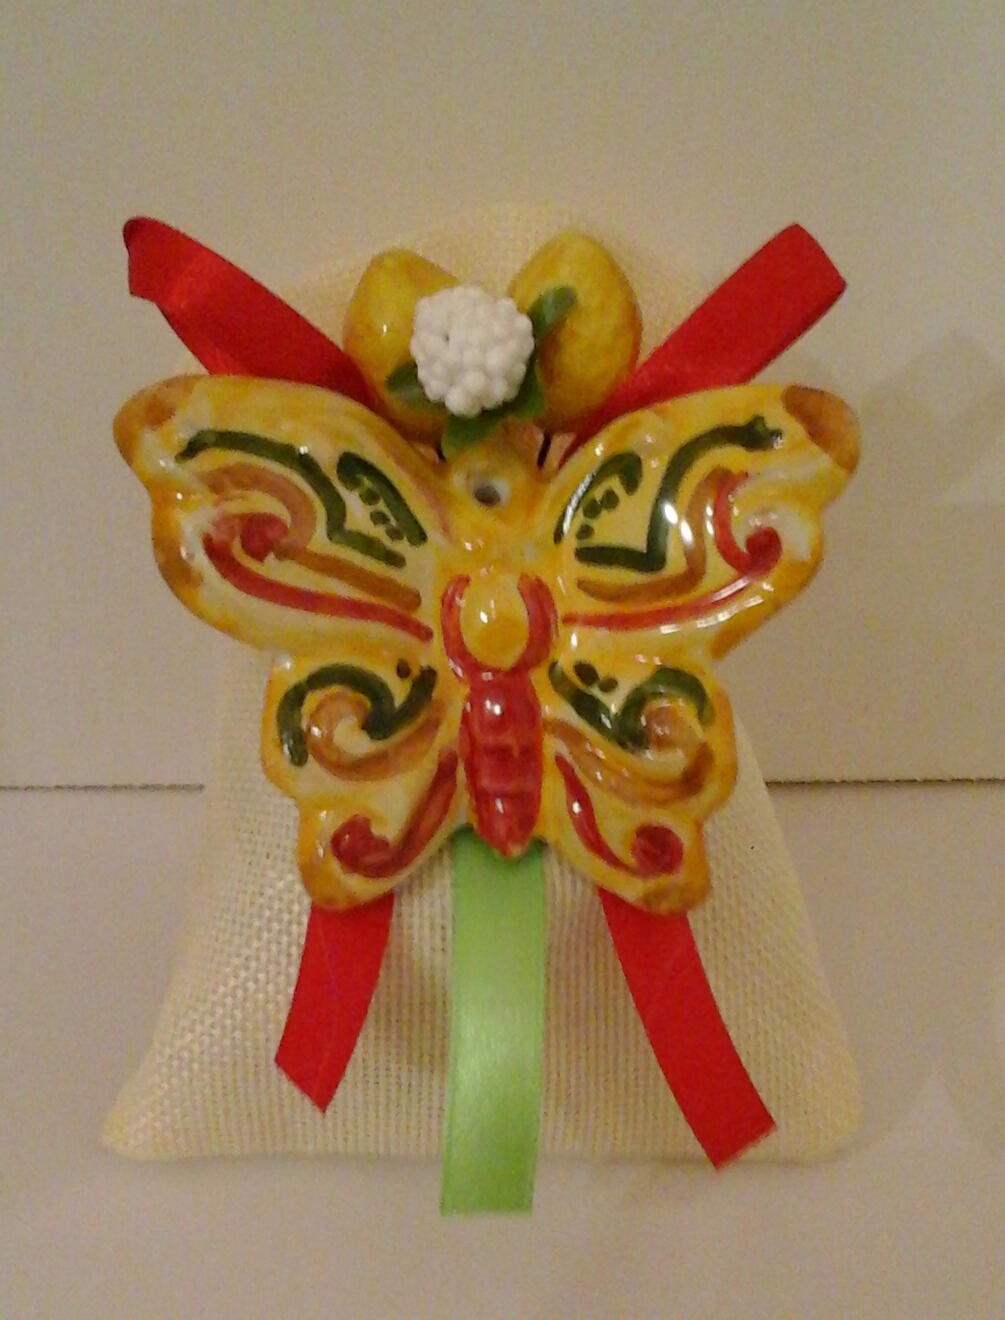 Sacchetto di confetti con farfalla, colori giallo, rosso e verde